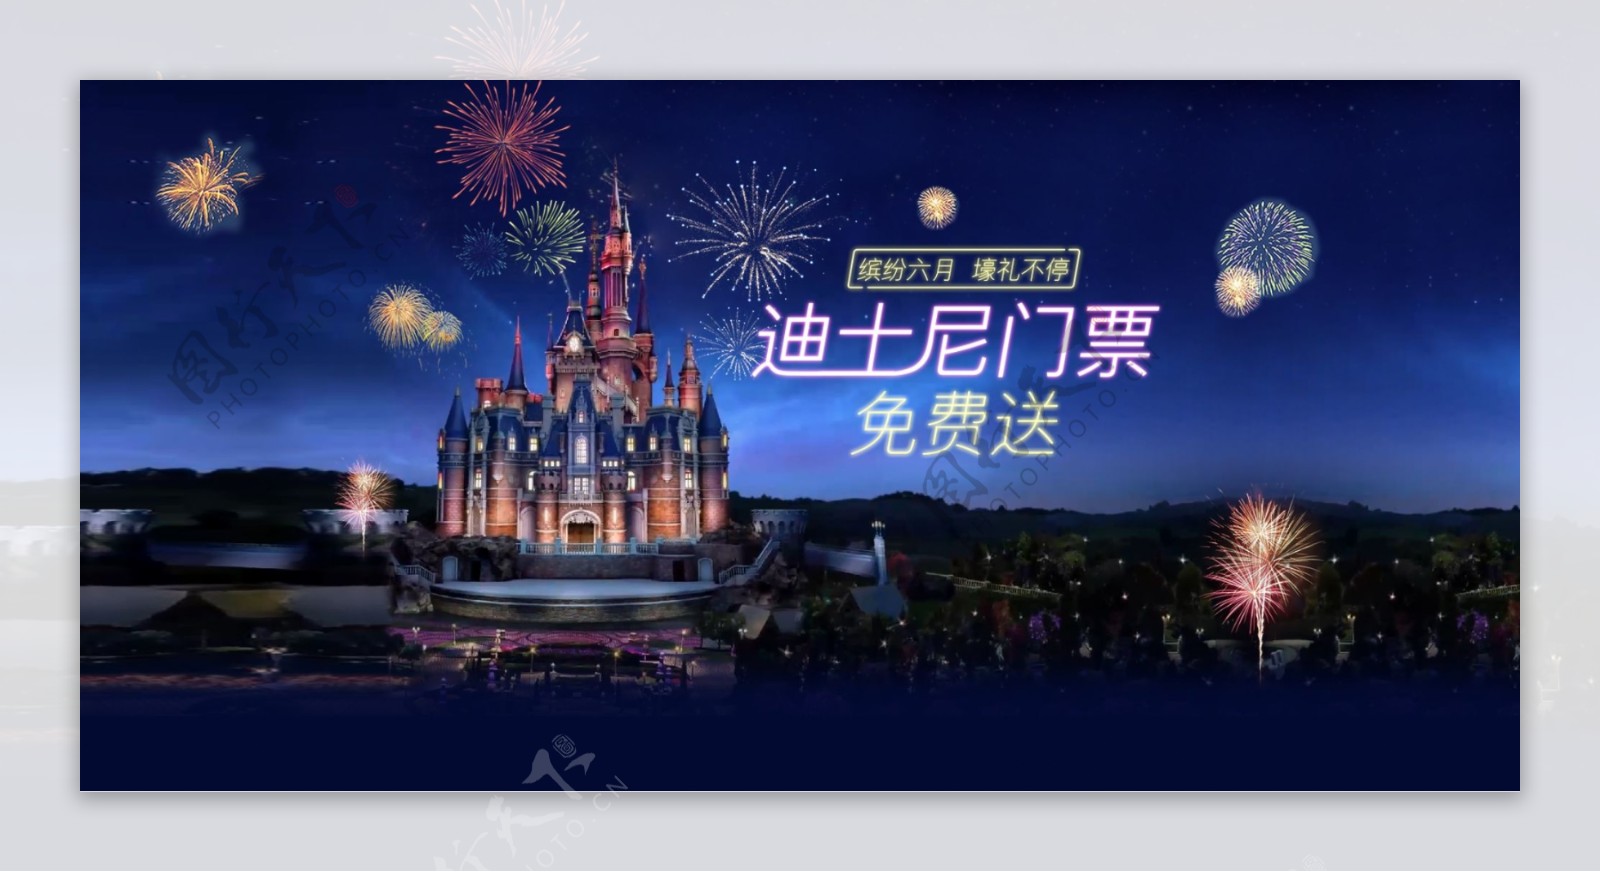 上海迪士尼城堡夜景活动